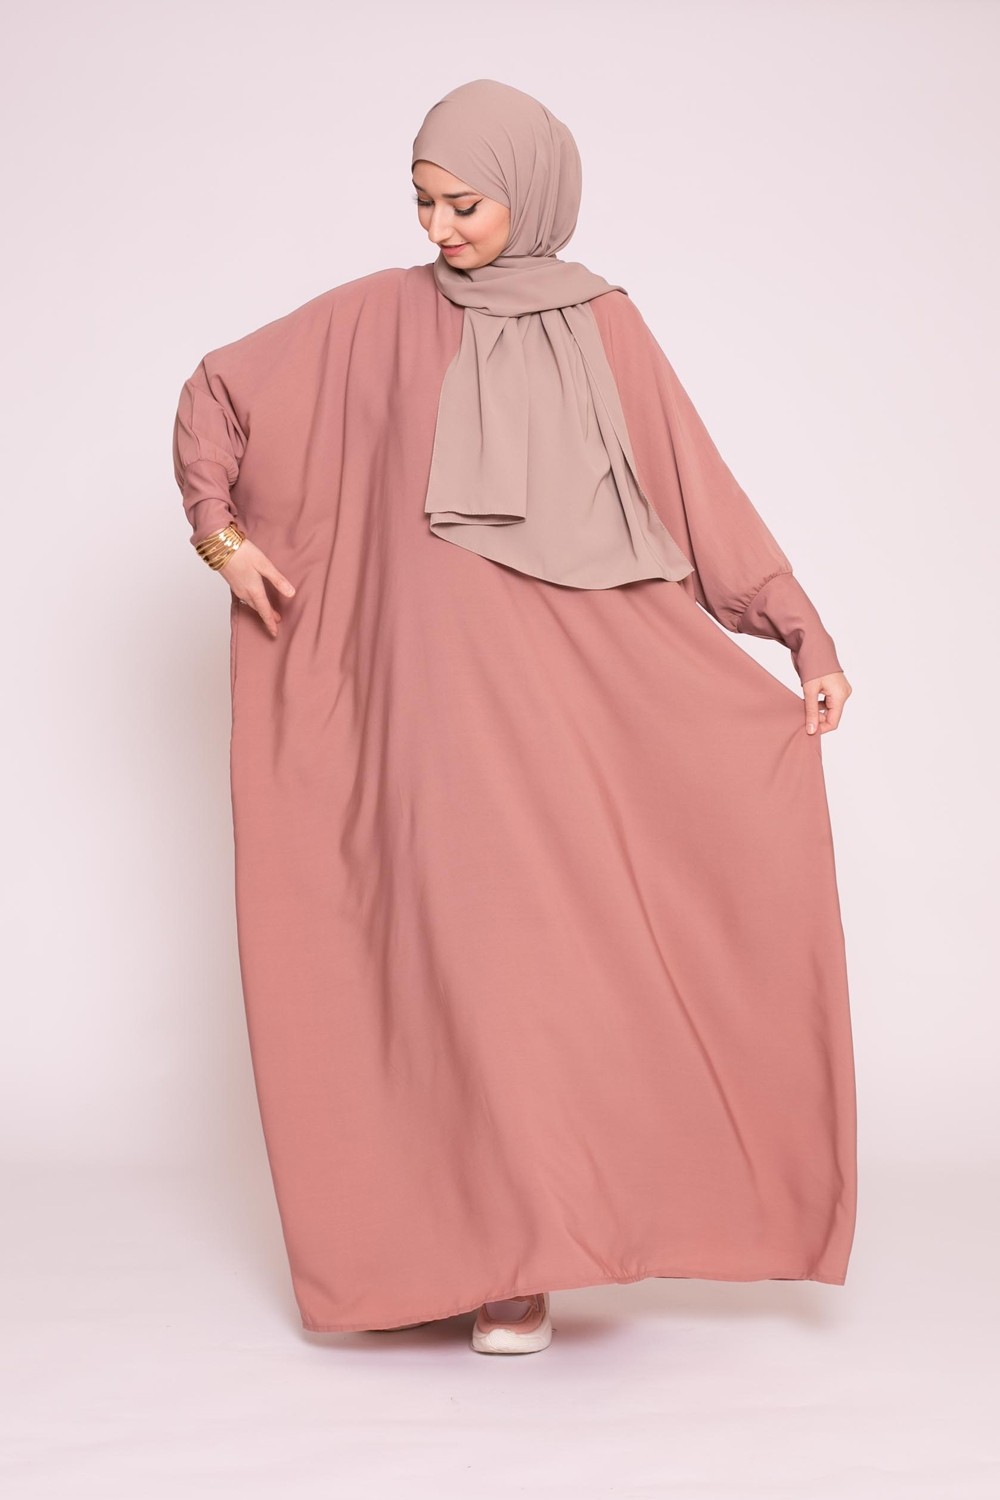 Arabia abaya viejo rosa oscuro